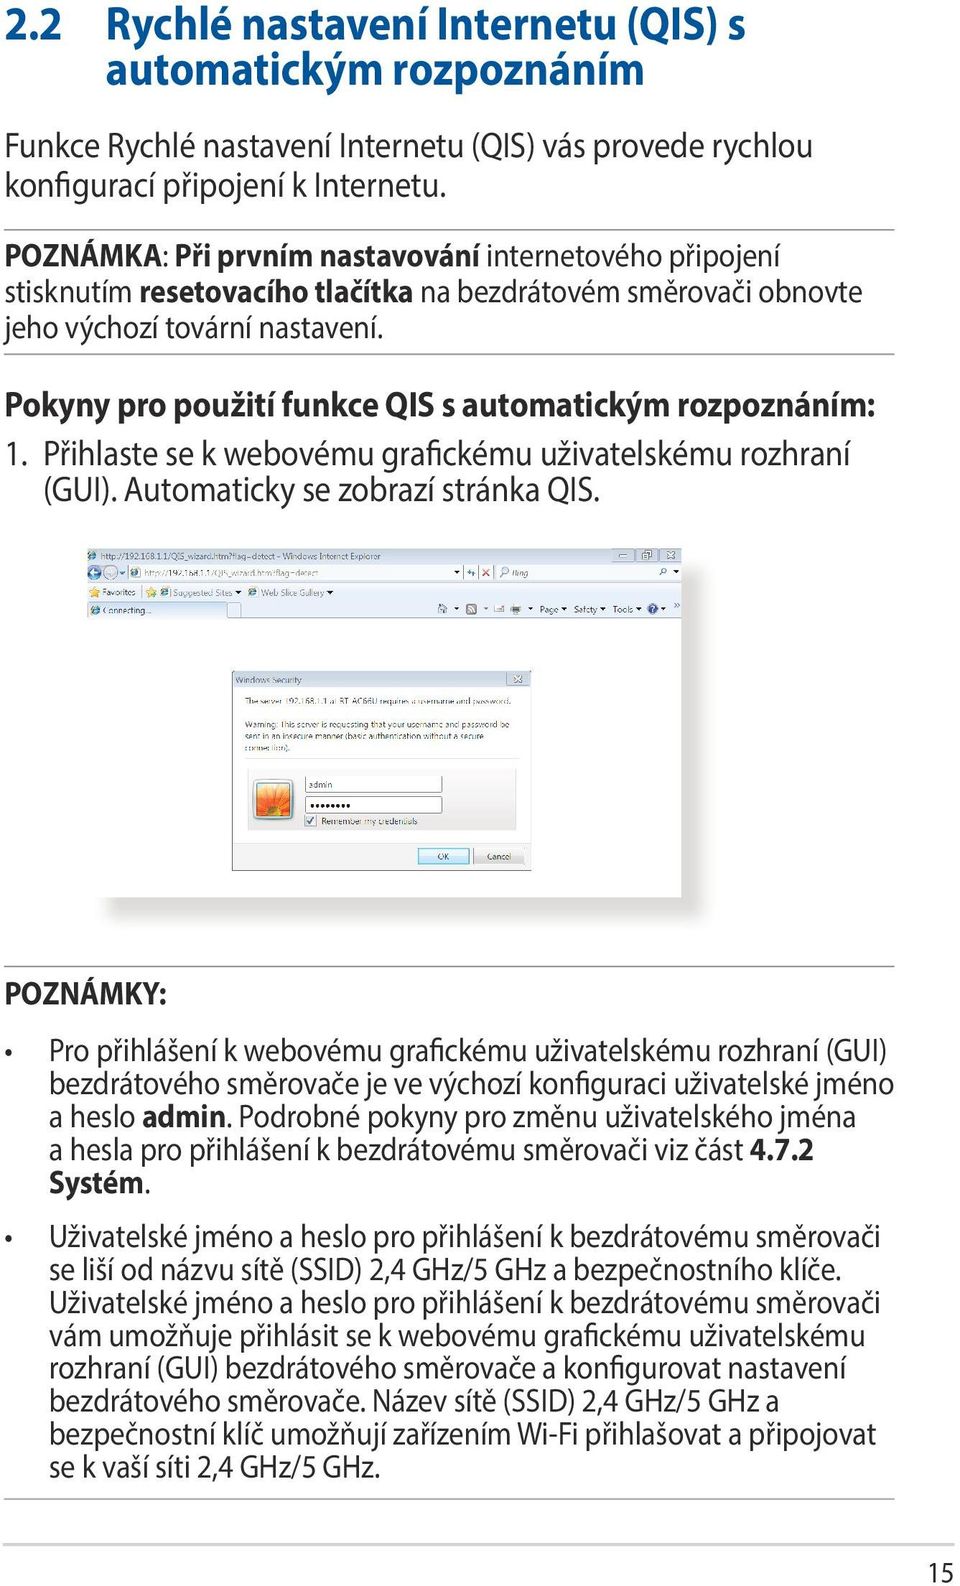 Pokyny pro použití funkce QIS s automatickým rozpoznáním: 1. Přihlaste se k webovému grafickému uživatelskému rozhraní (GUI). Automaticky se zobrazí stránka QIS.